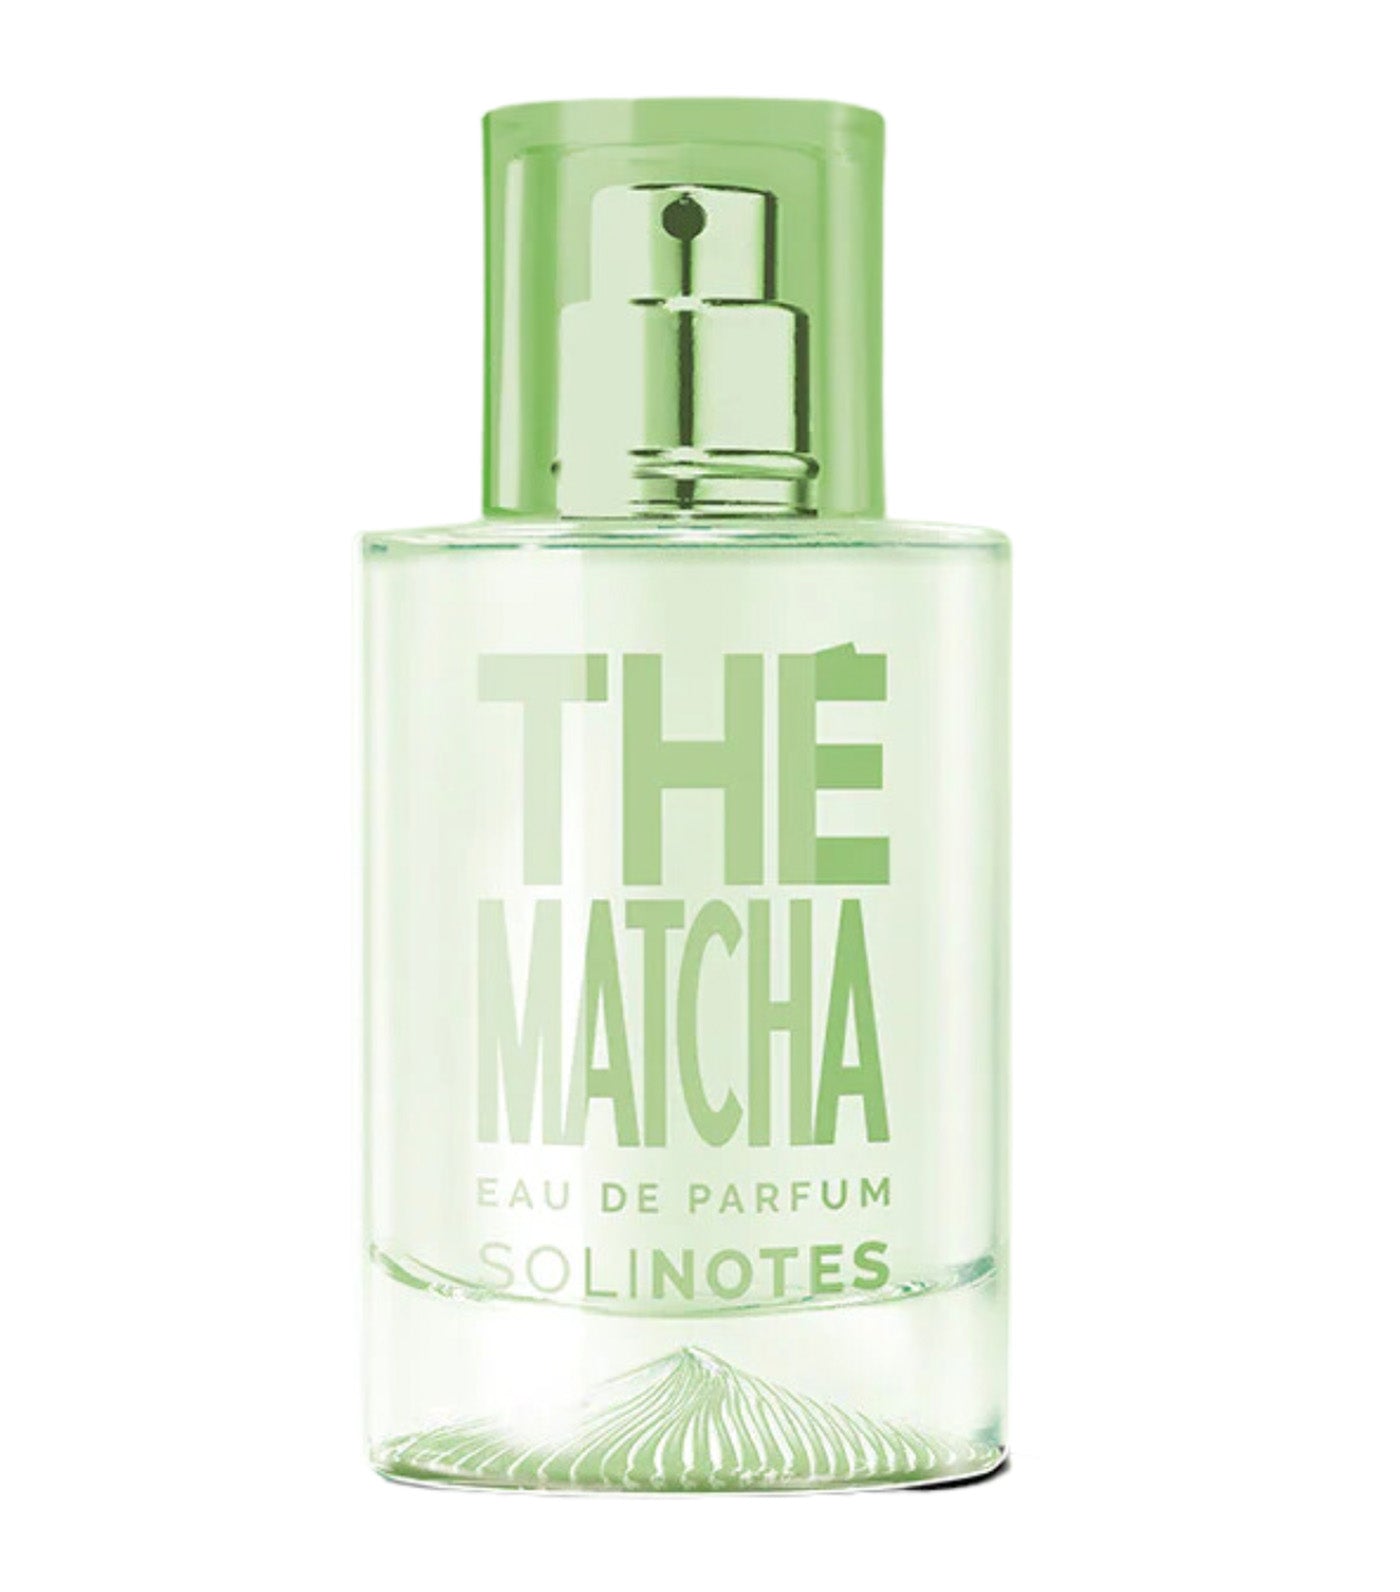 The Matcha Eau de Parfum